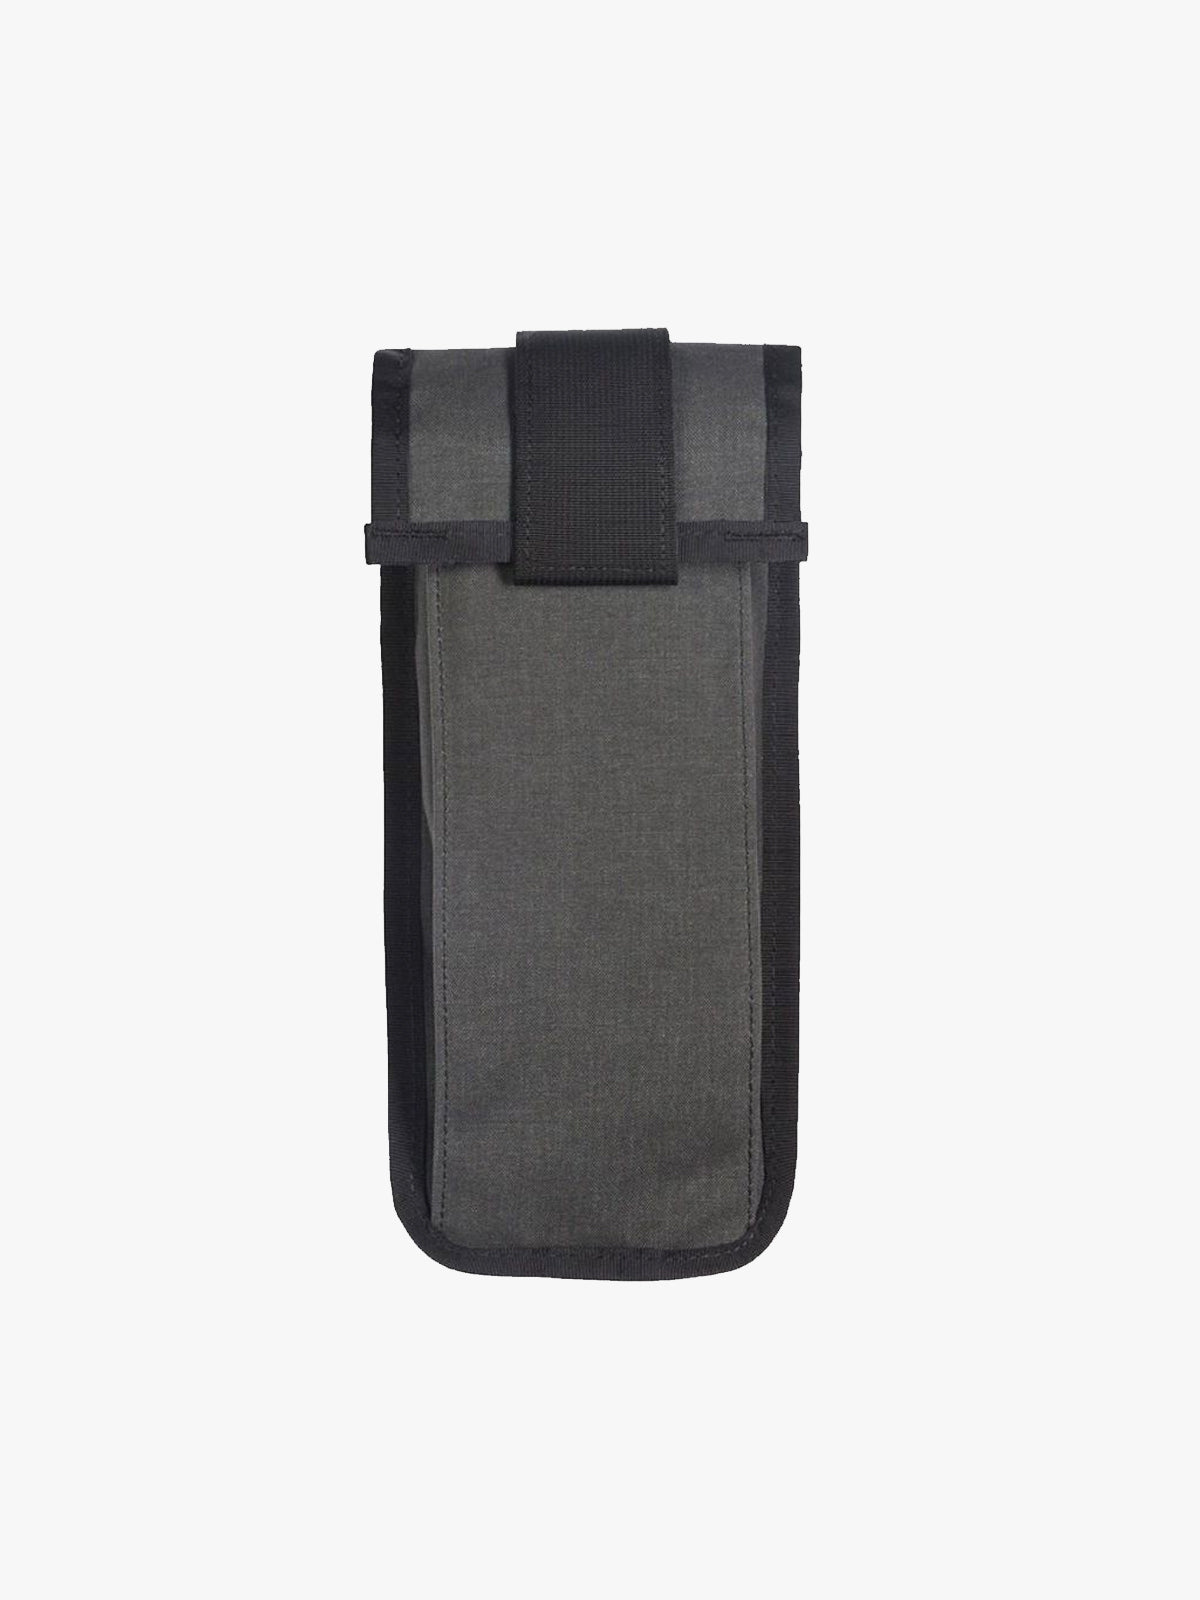 Arkiv Vertical Rolltop Pocket by Mission Workshop - Säänkestävät laukut ja tekniset vaatteet - San Francisco & Los Angeles - Rakennettu kestämään - ikuinen takuu